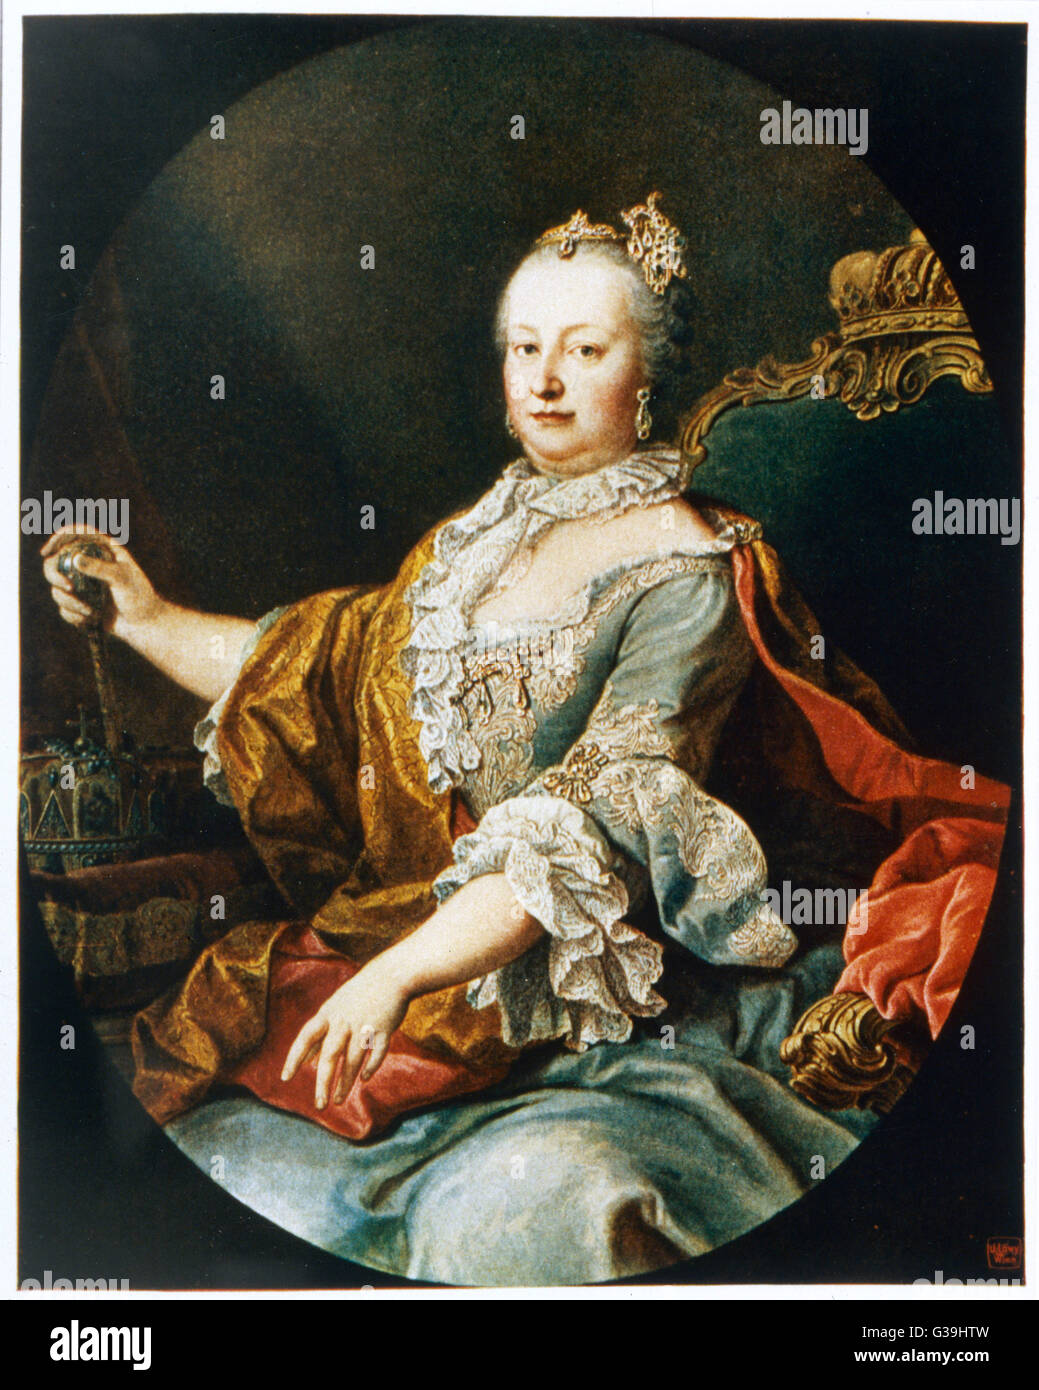 MARIA THERESIA Arciduchessa d'Austria, regina di Ungheria e di Boemia, figlia dell'Imperatore Carlo VI, moglie dell'Imperatore Francesco I, madre dell'Imperatore Giuseppe II data: 1717 - 1780 Foto Stock